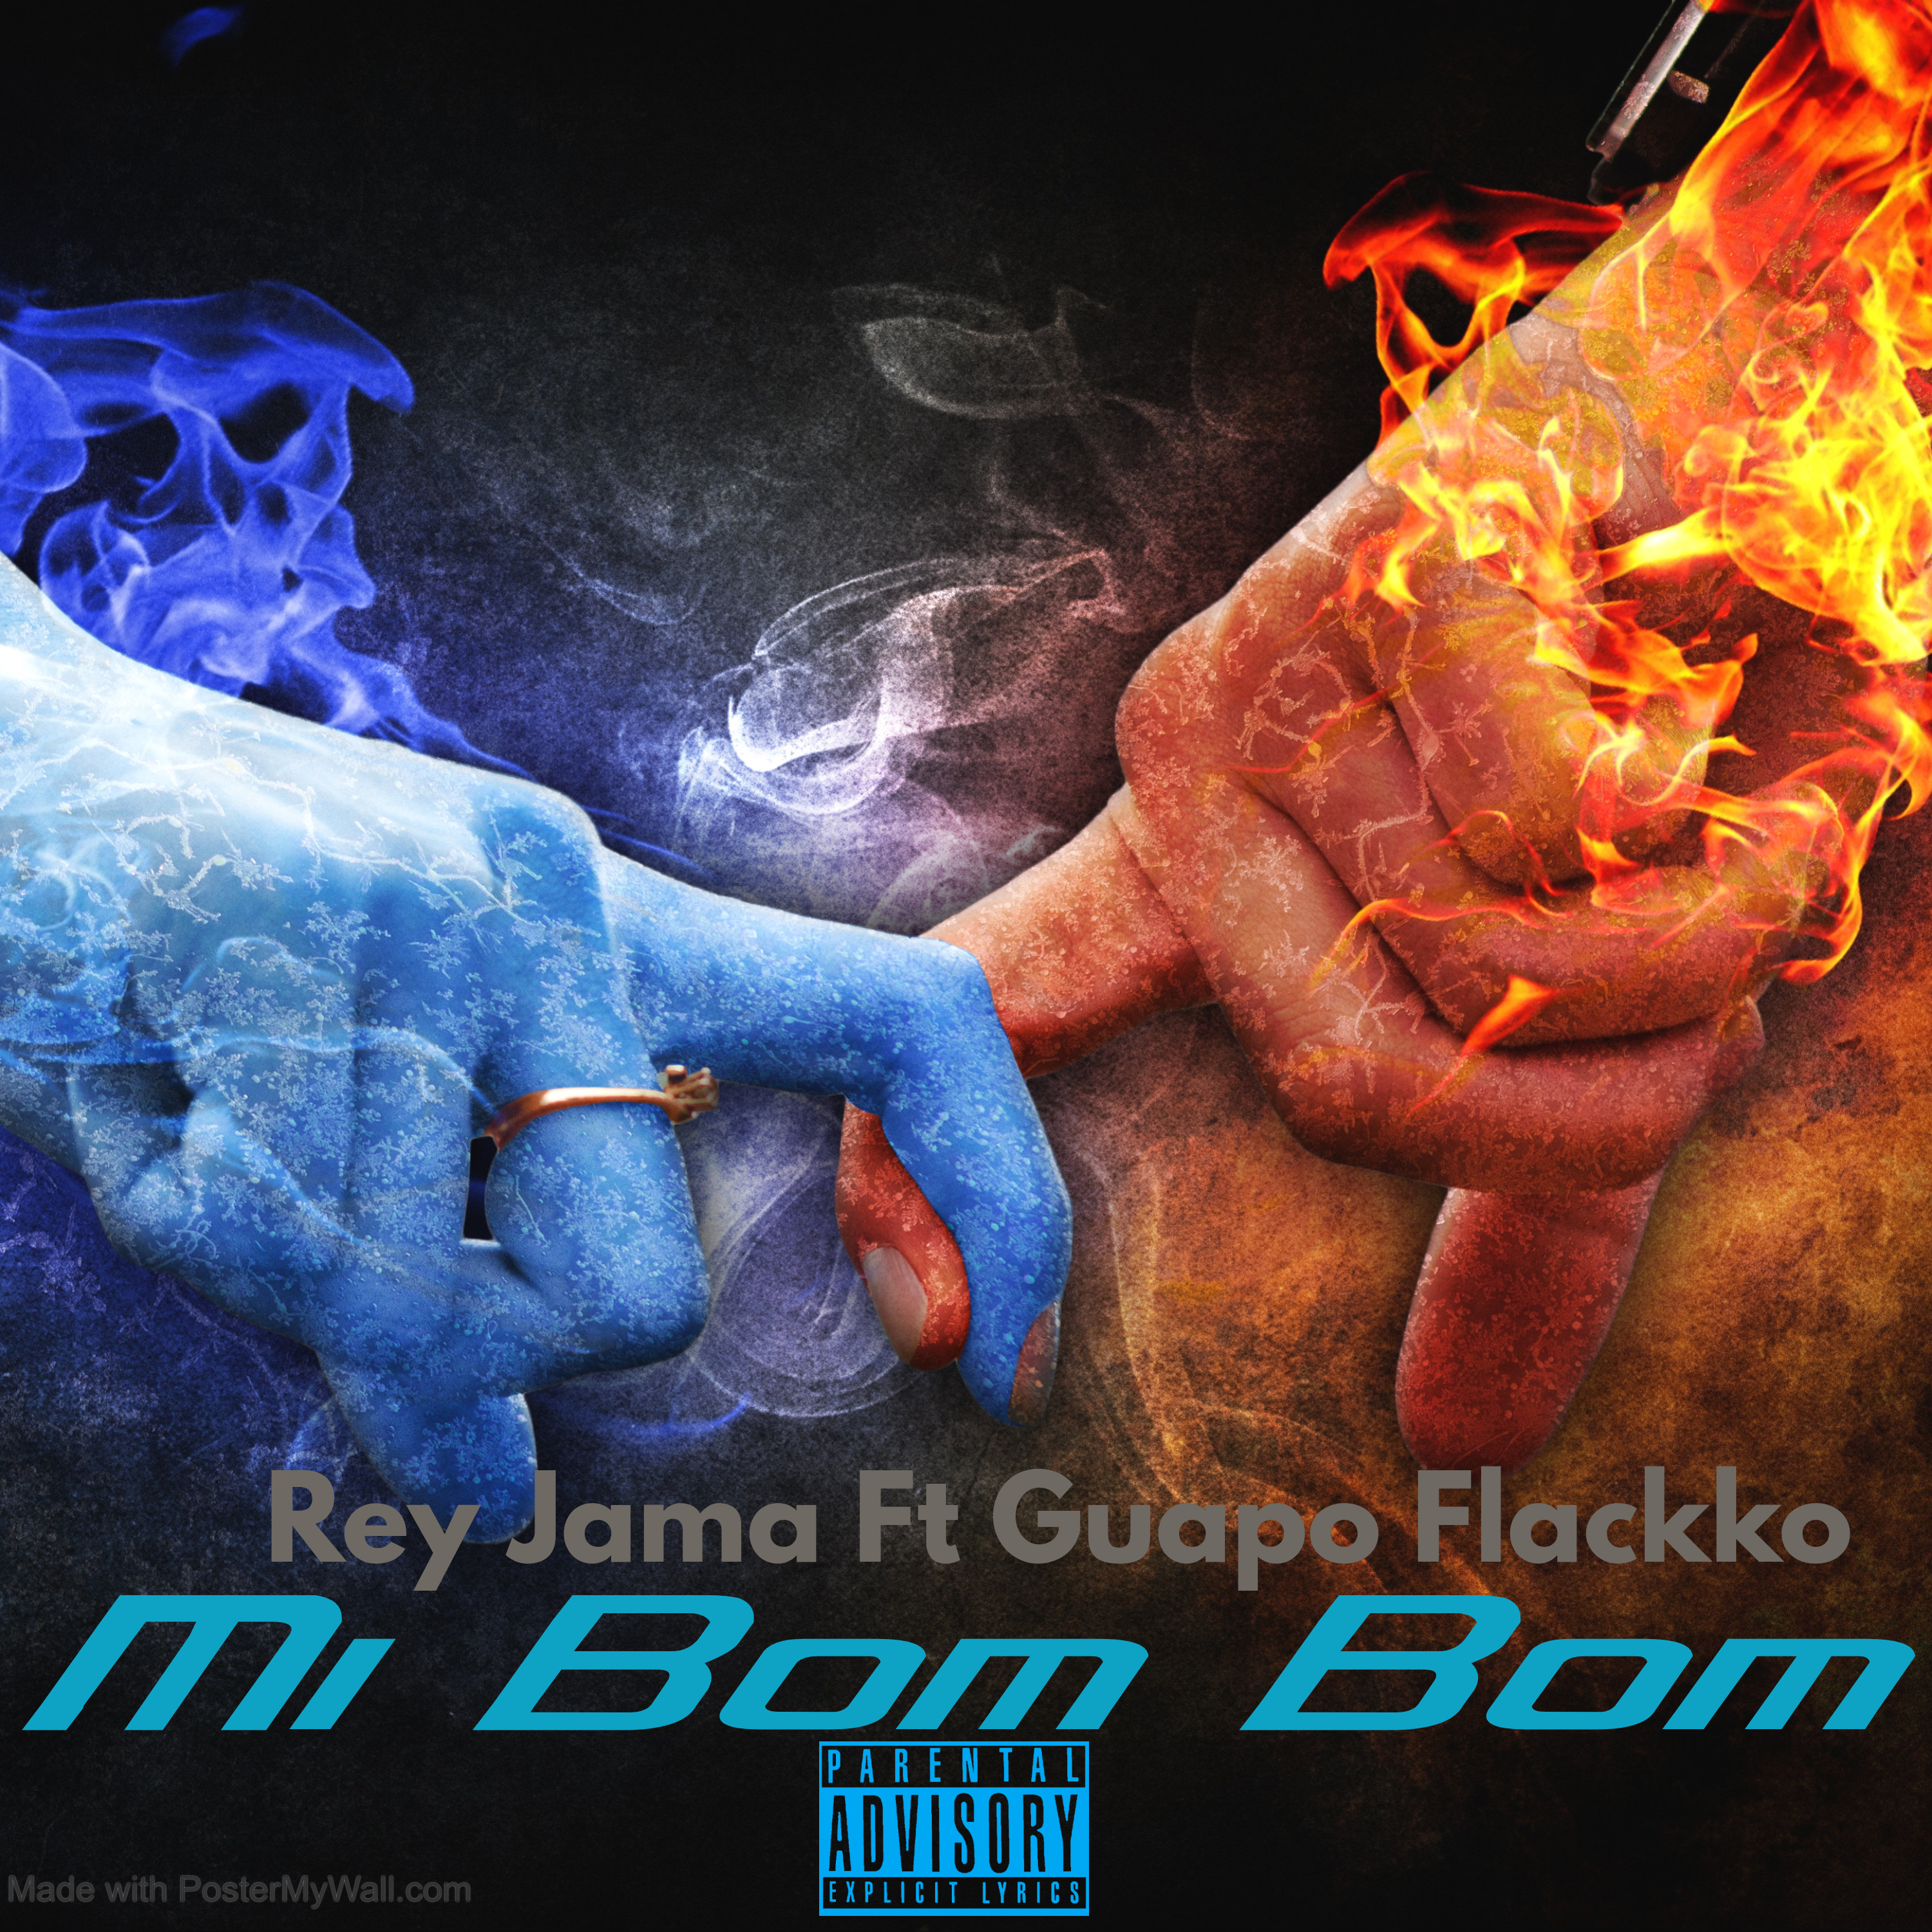 Art for Mi Bom Bom by Rey Jama [feat. Guapo Flackko]